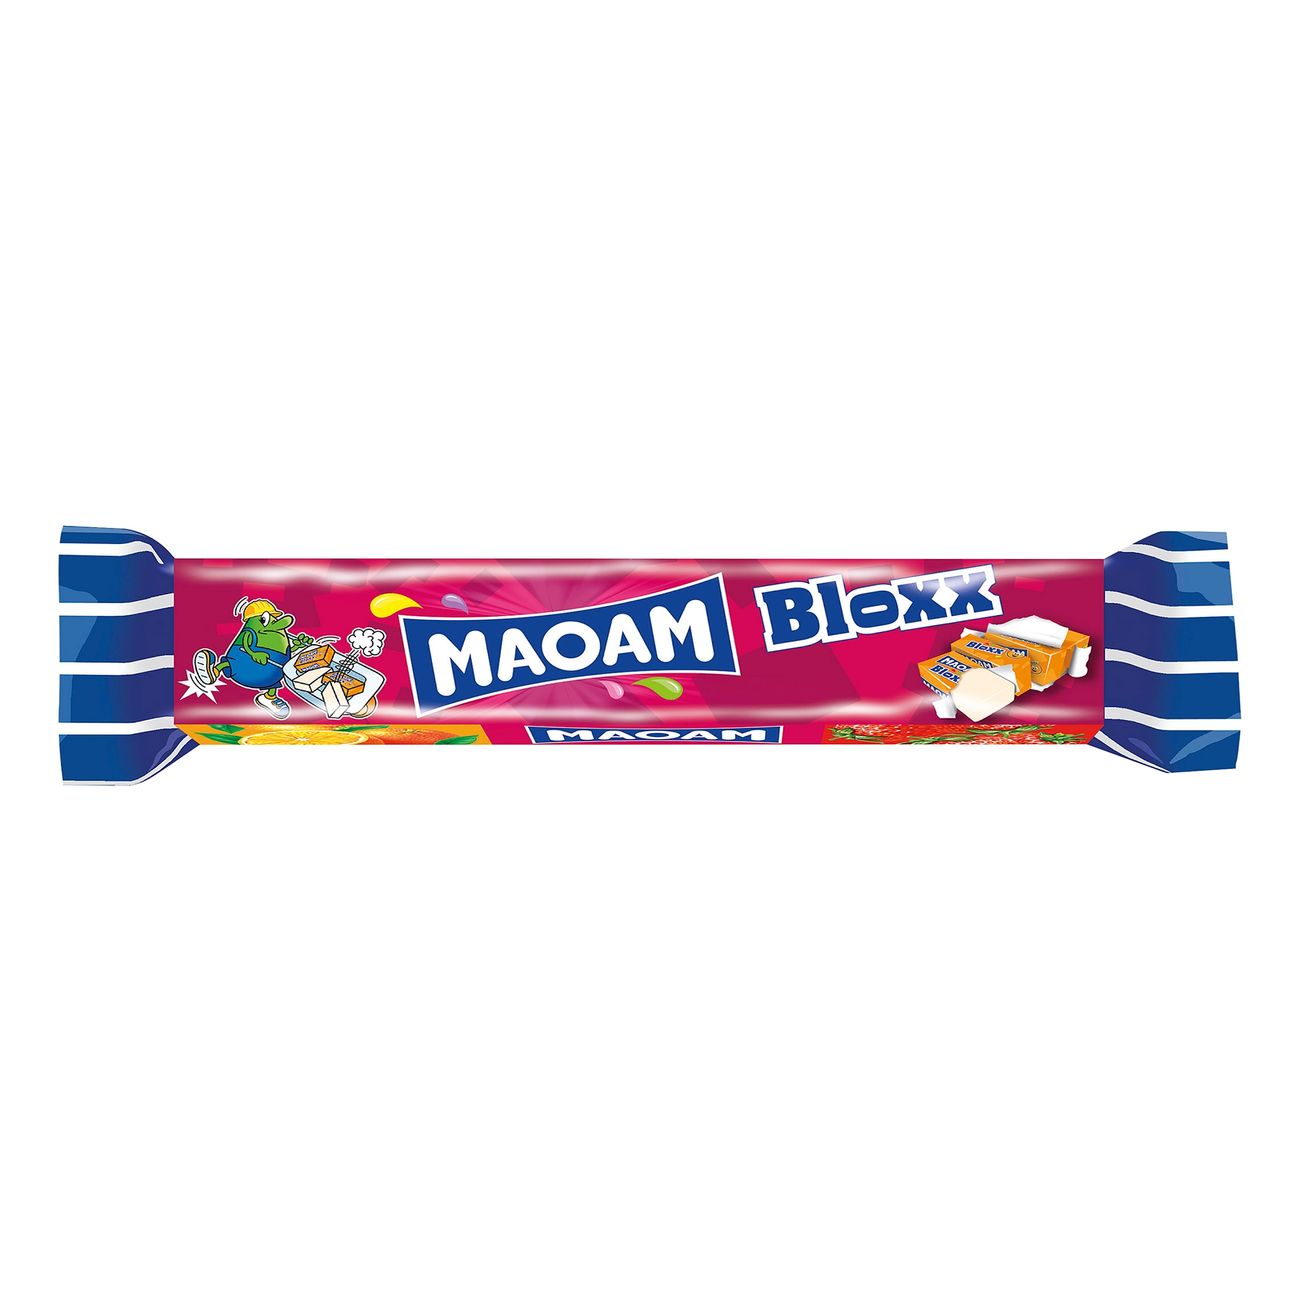 maoam-bloxx-69516-2